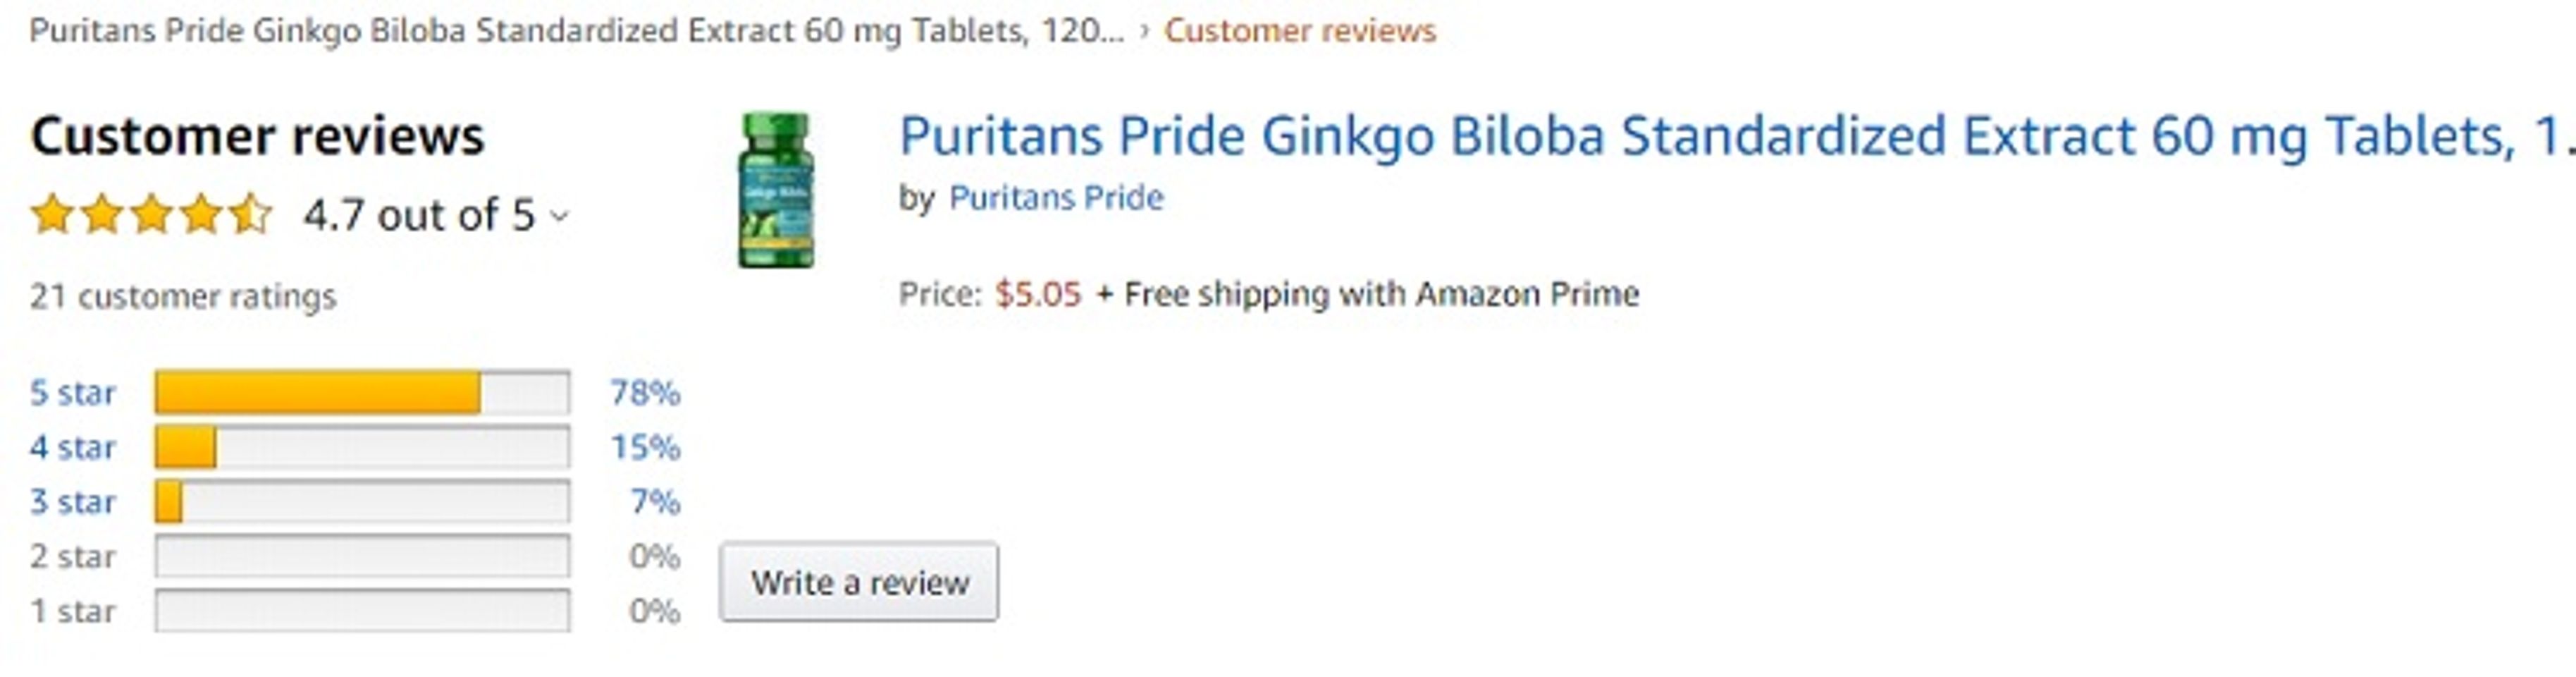 Phản hồi từ phía khách hàng sử dụng Ginkgo Biloba 60mg Puritan's Pride 2